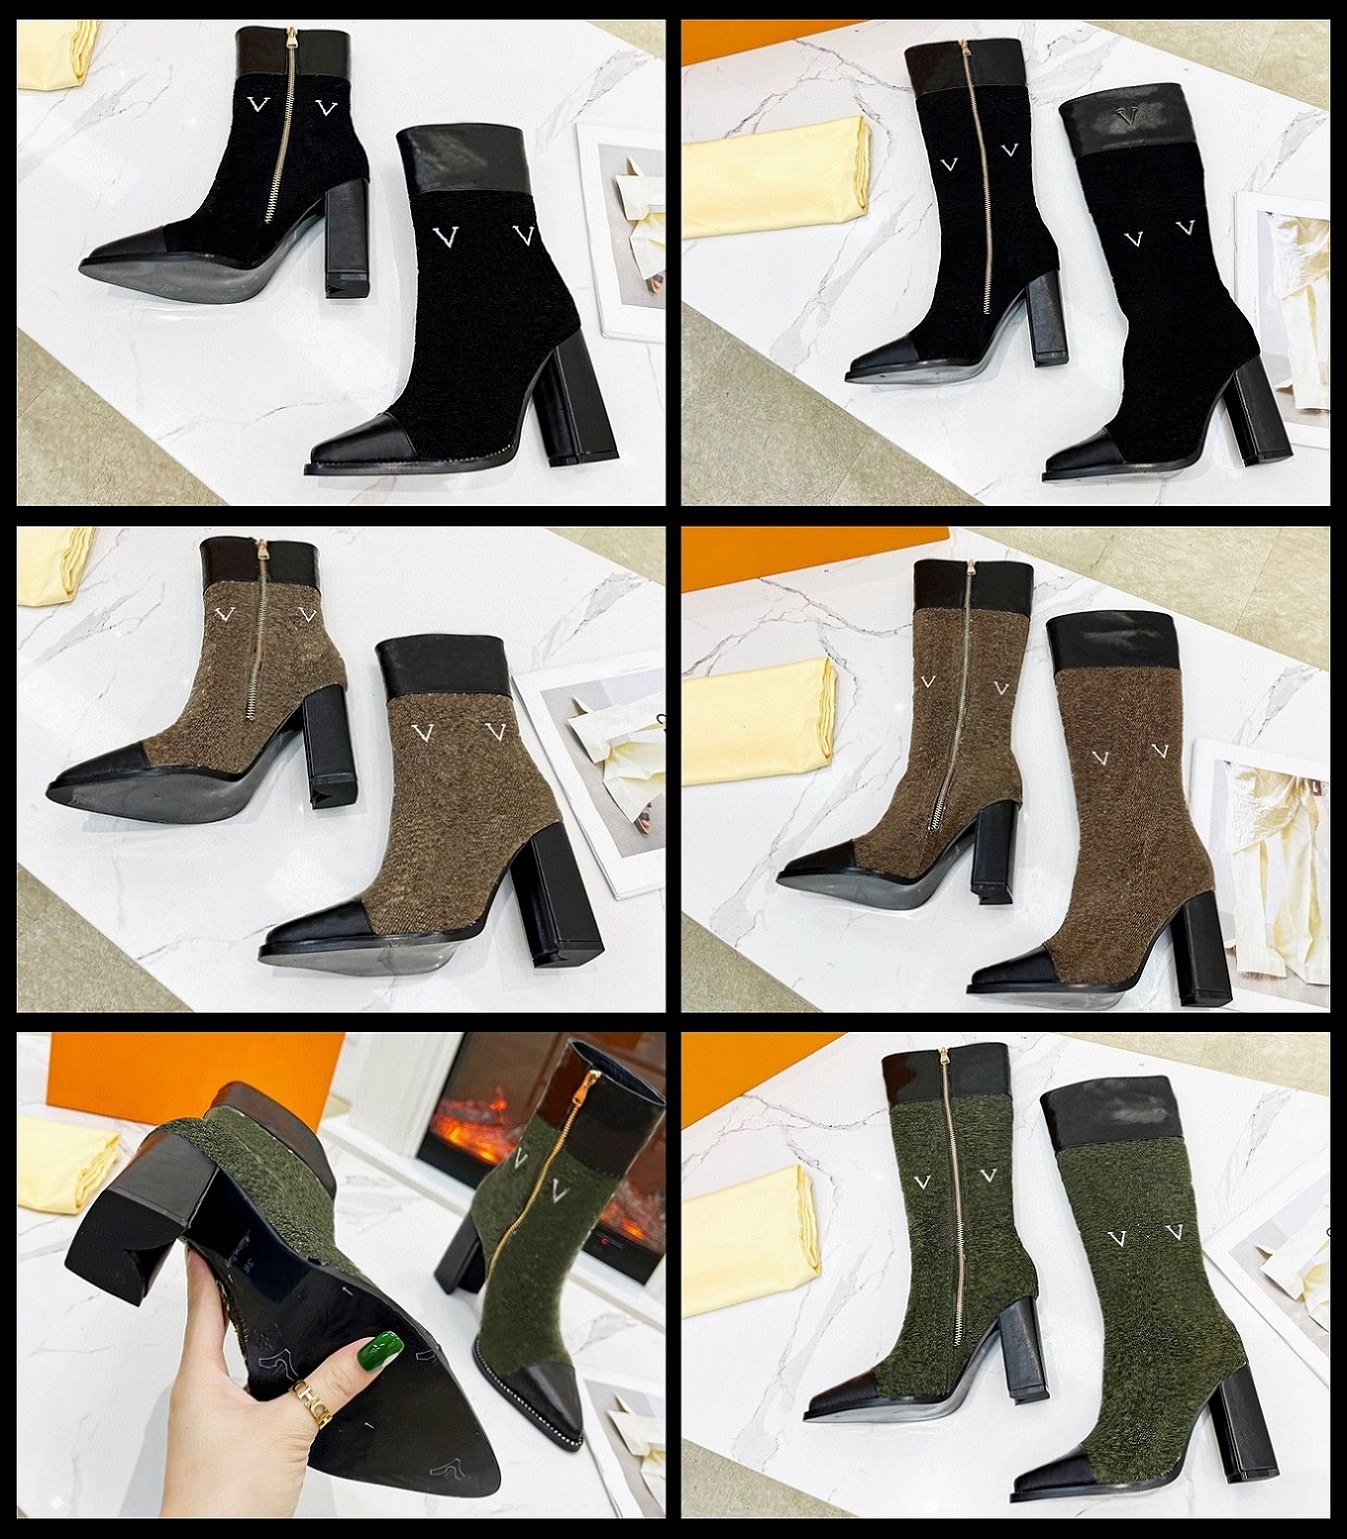 Luksusowe buty marki Paris Designer Boot oryginalne skórzane botki kostki Kobieta krótkie buty trampki Treaker Sandały Treszcze przez TOPSHOE99 W173 01